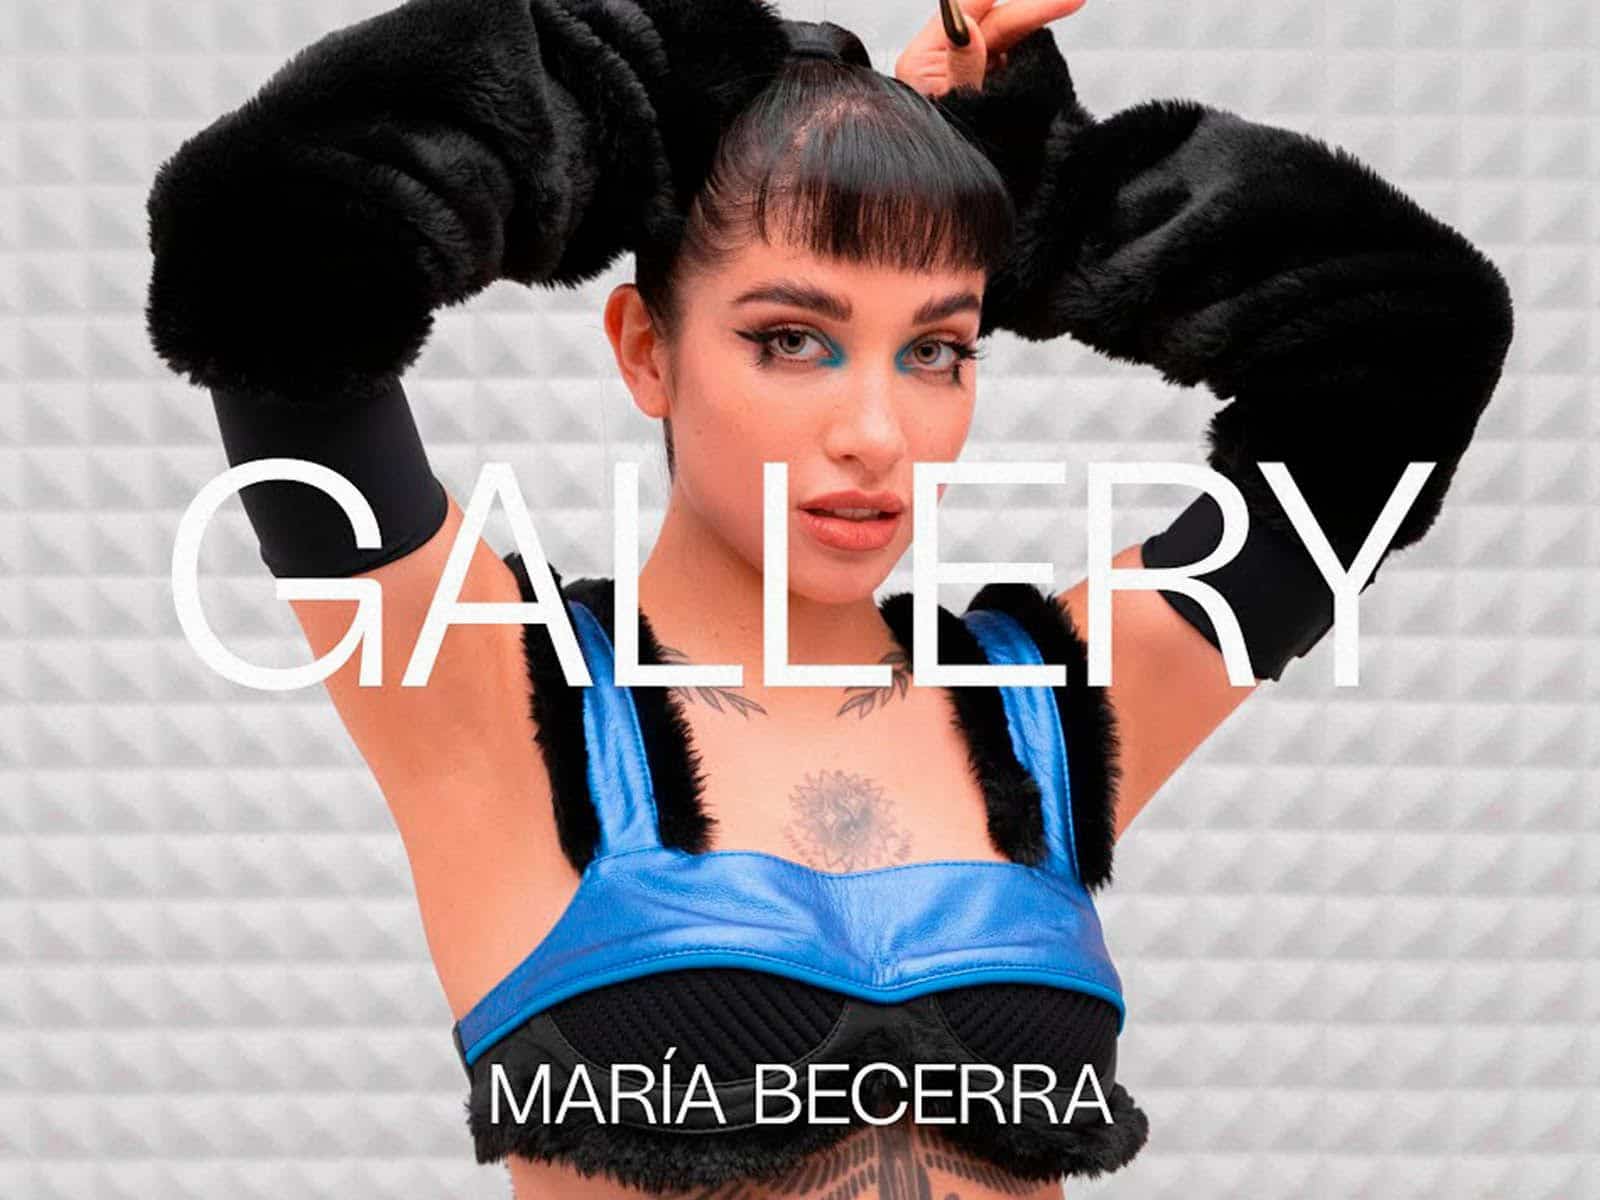 María Becerra en Gallery Sessions con su éxito “Ojalá”